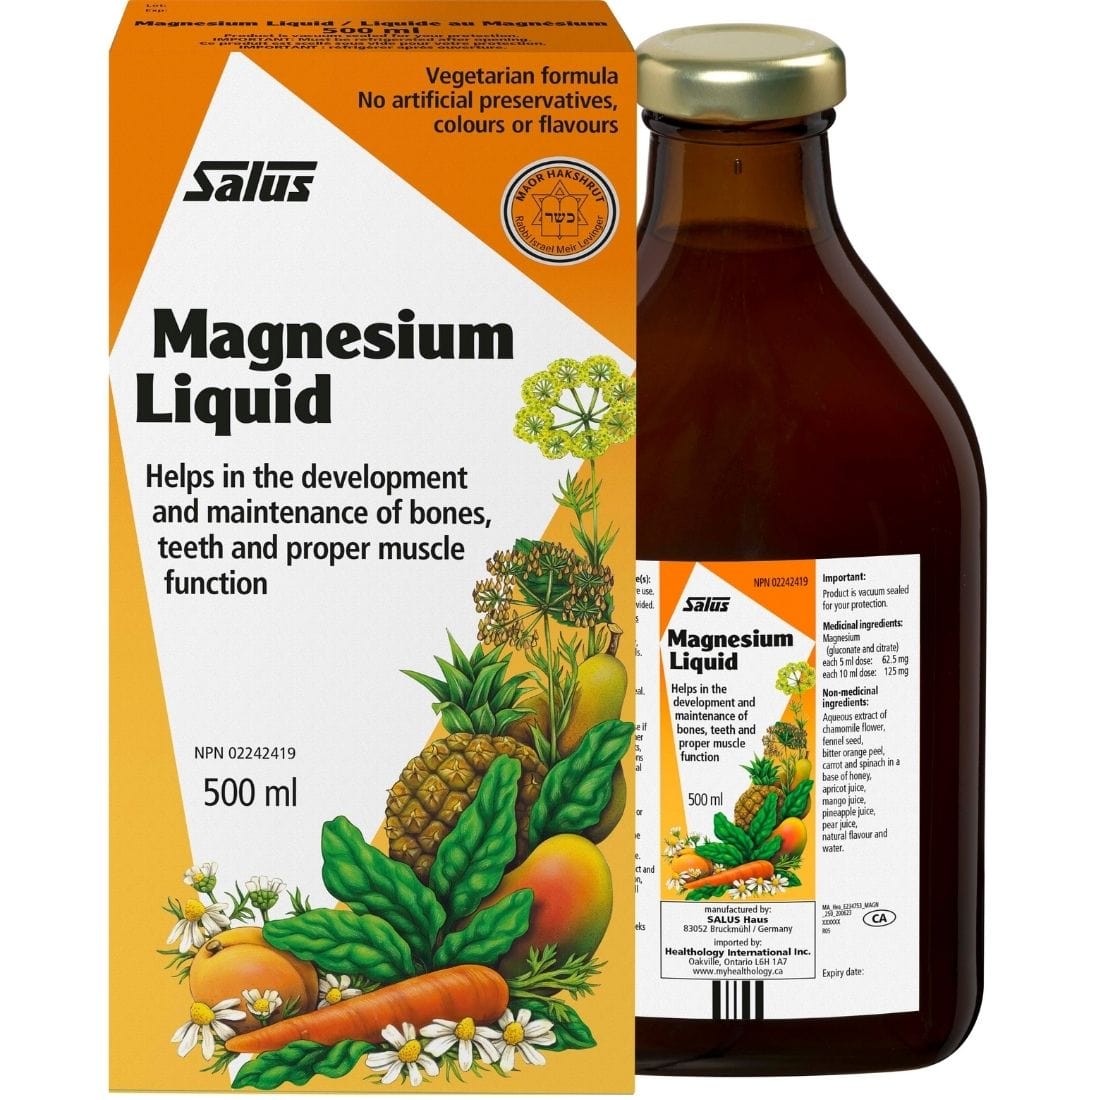 Salus Magnesium Liquid (Vegetarian Formula)